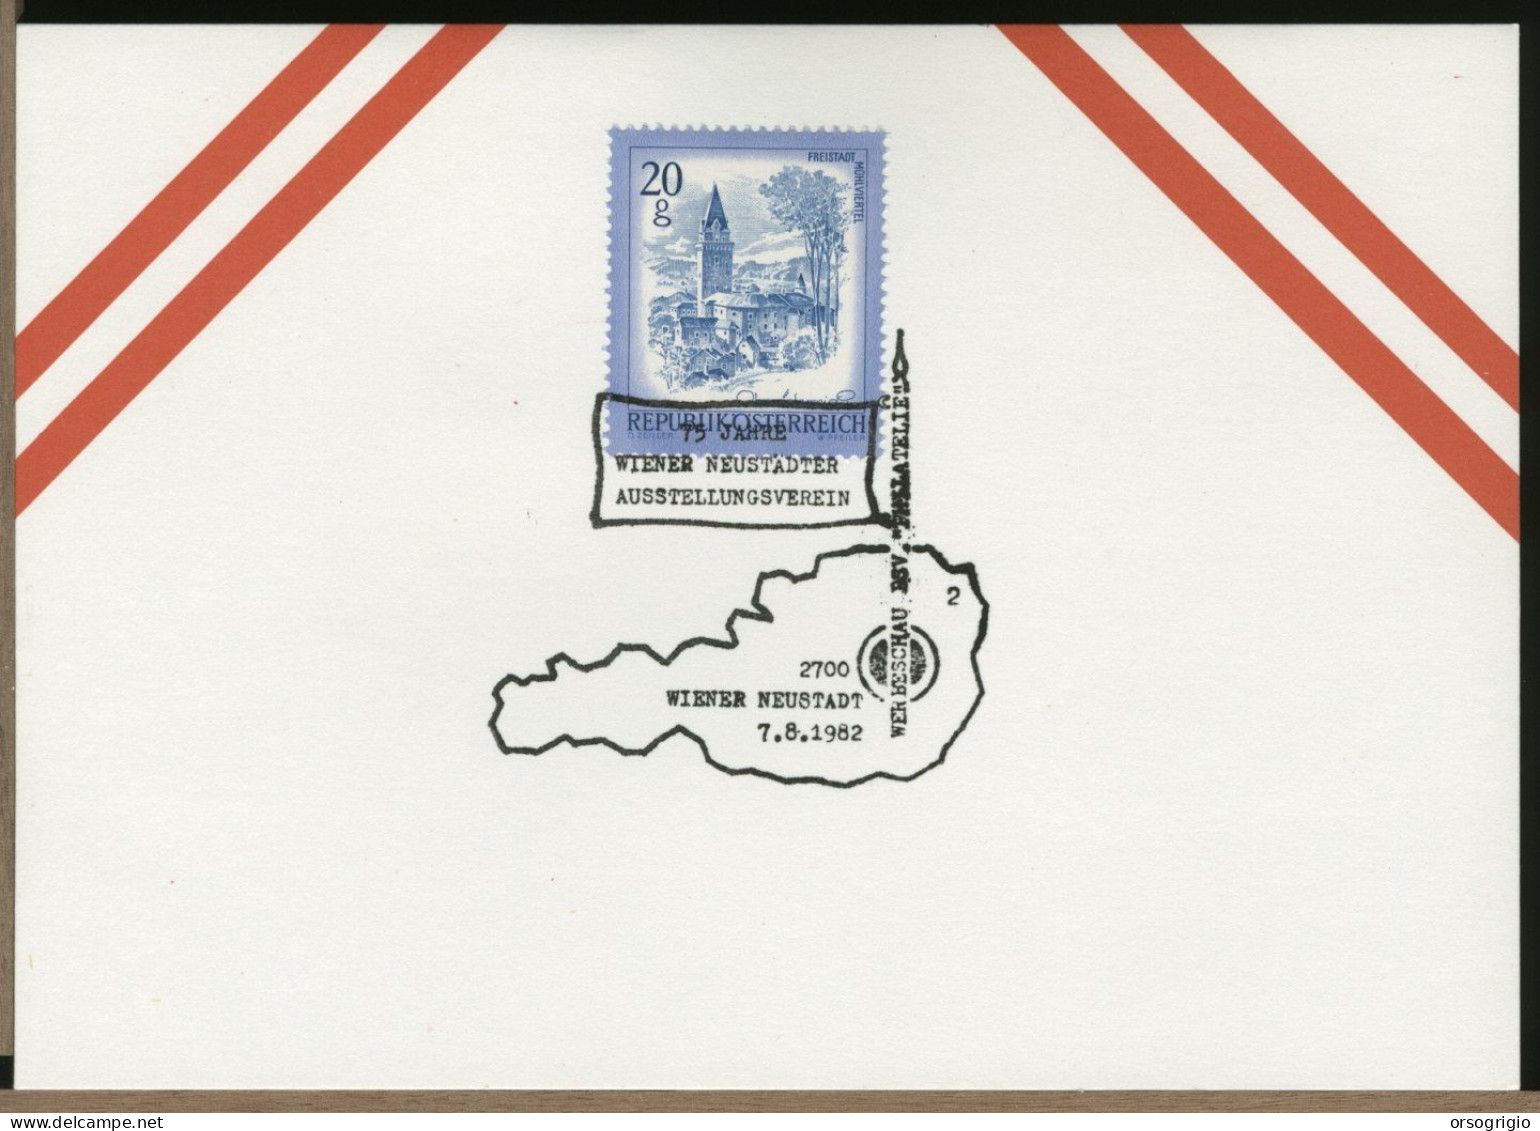 AUSTRIA OSTERREICH  -  WIEN - 1982 - WIENER NEUSTADT - Storia Postale